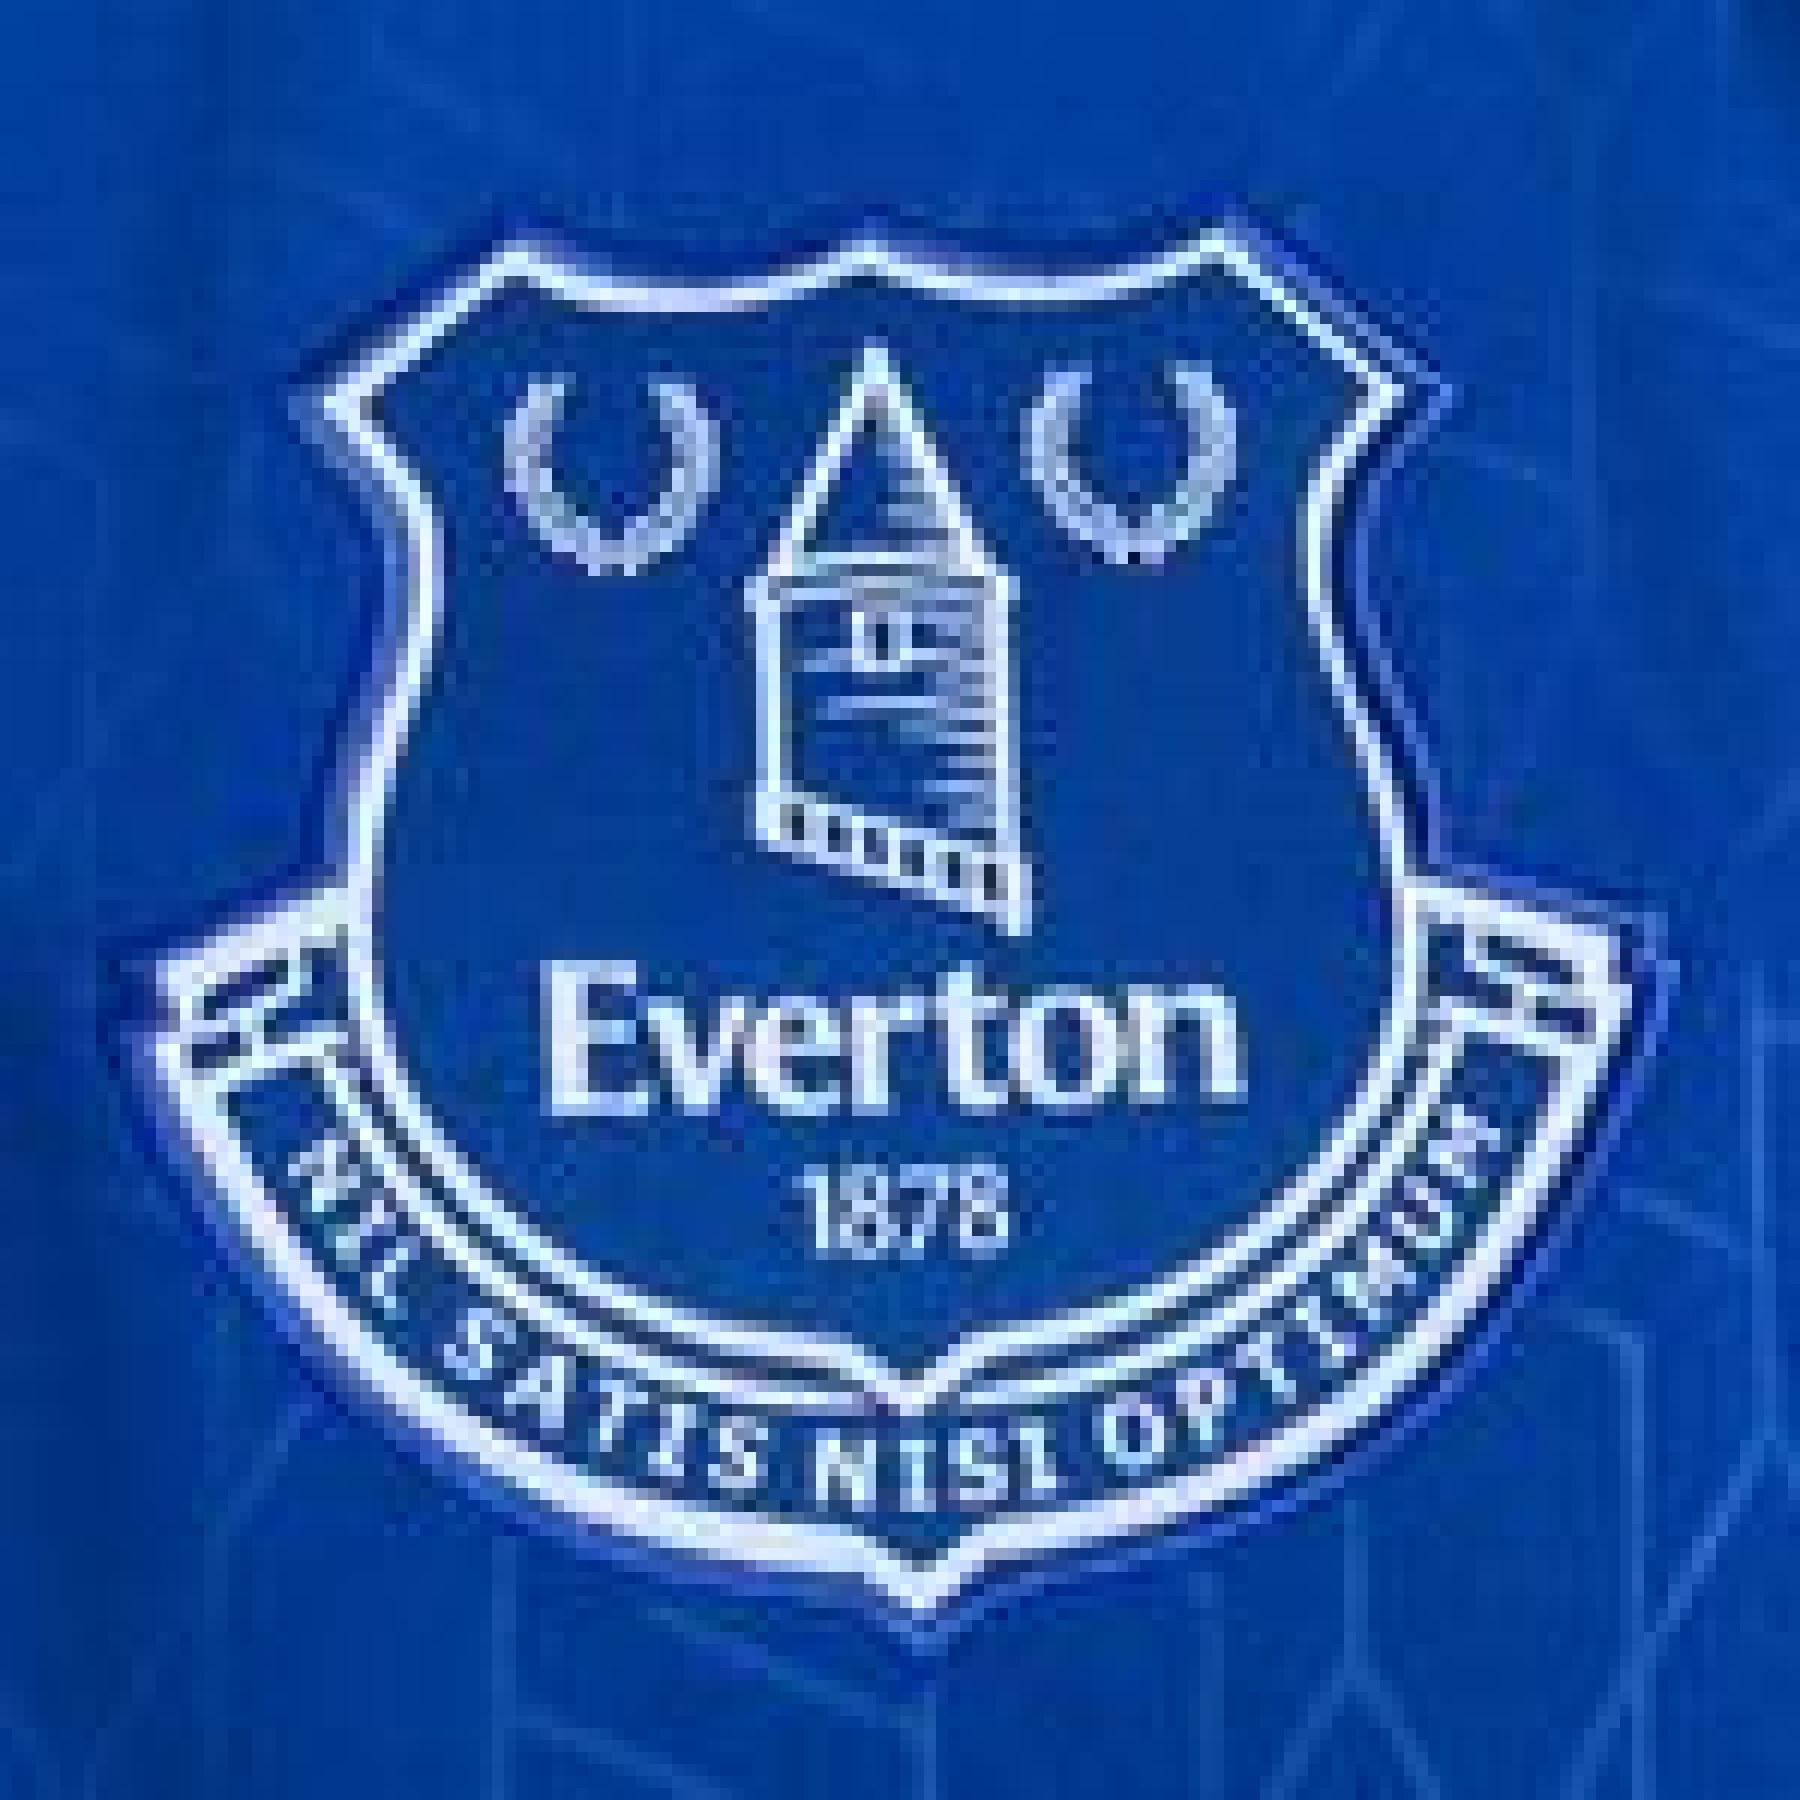 Koszulka domowa Everton 2022/23